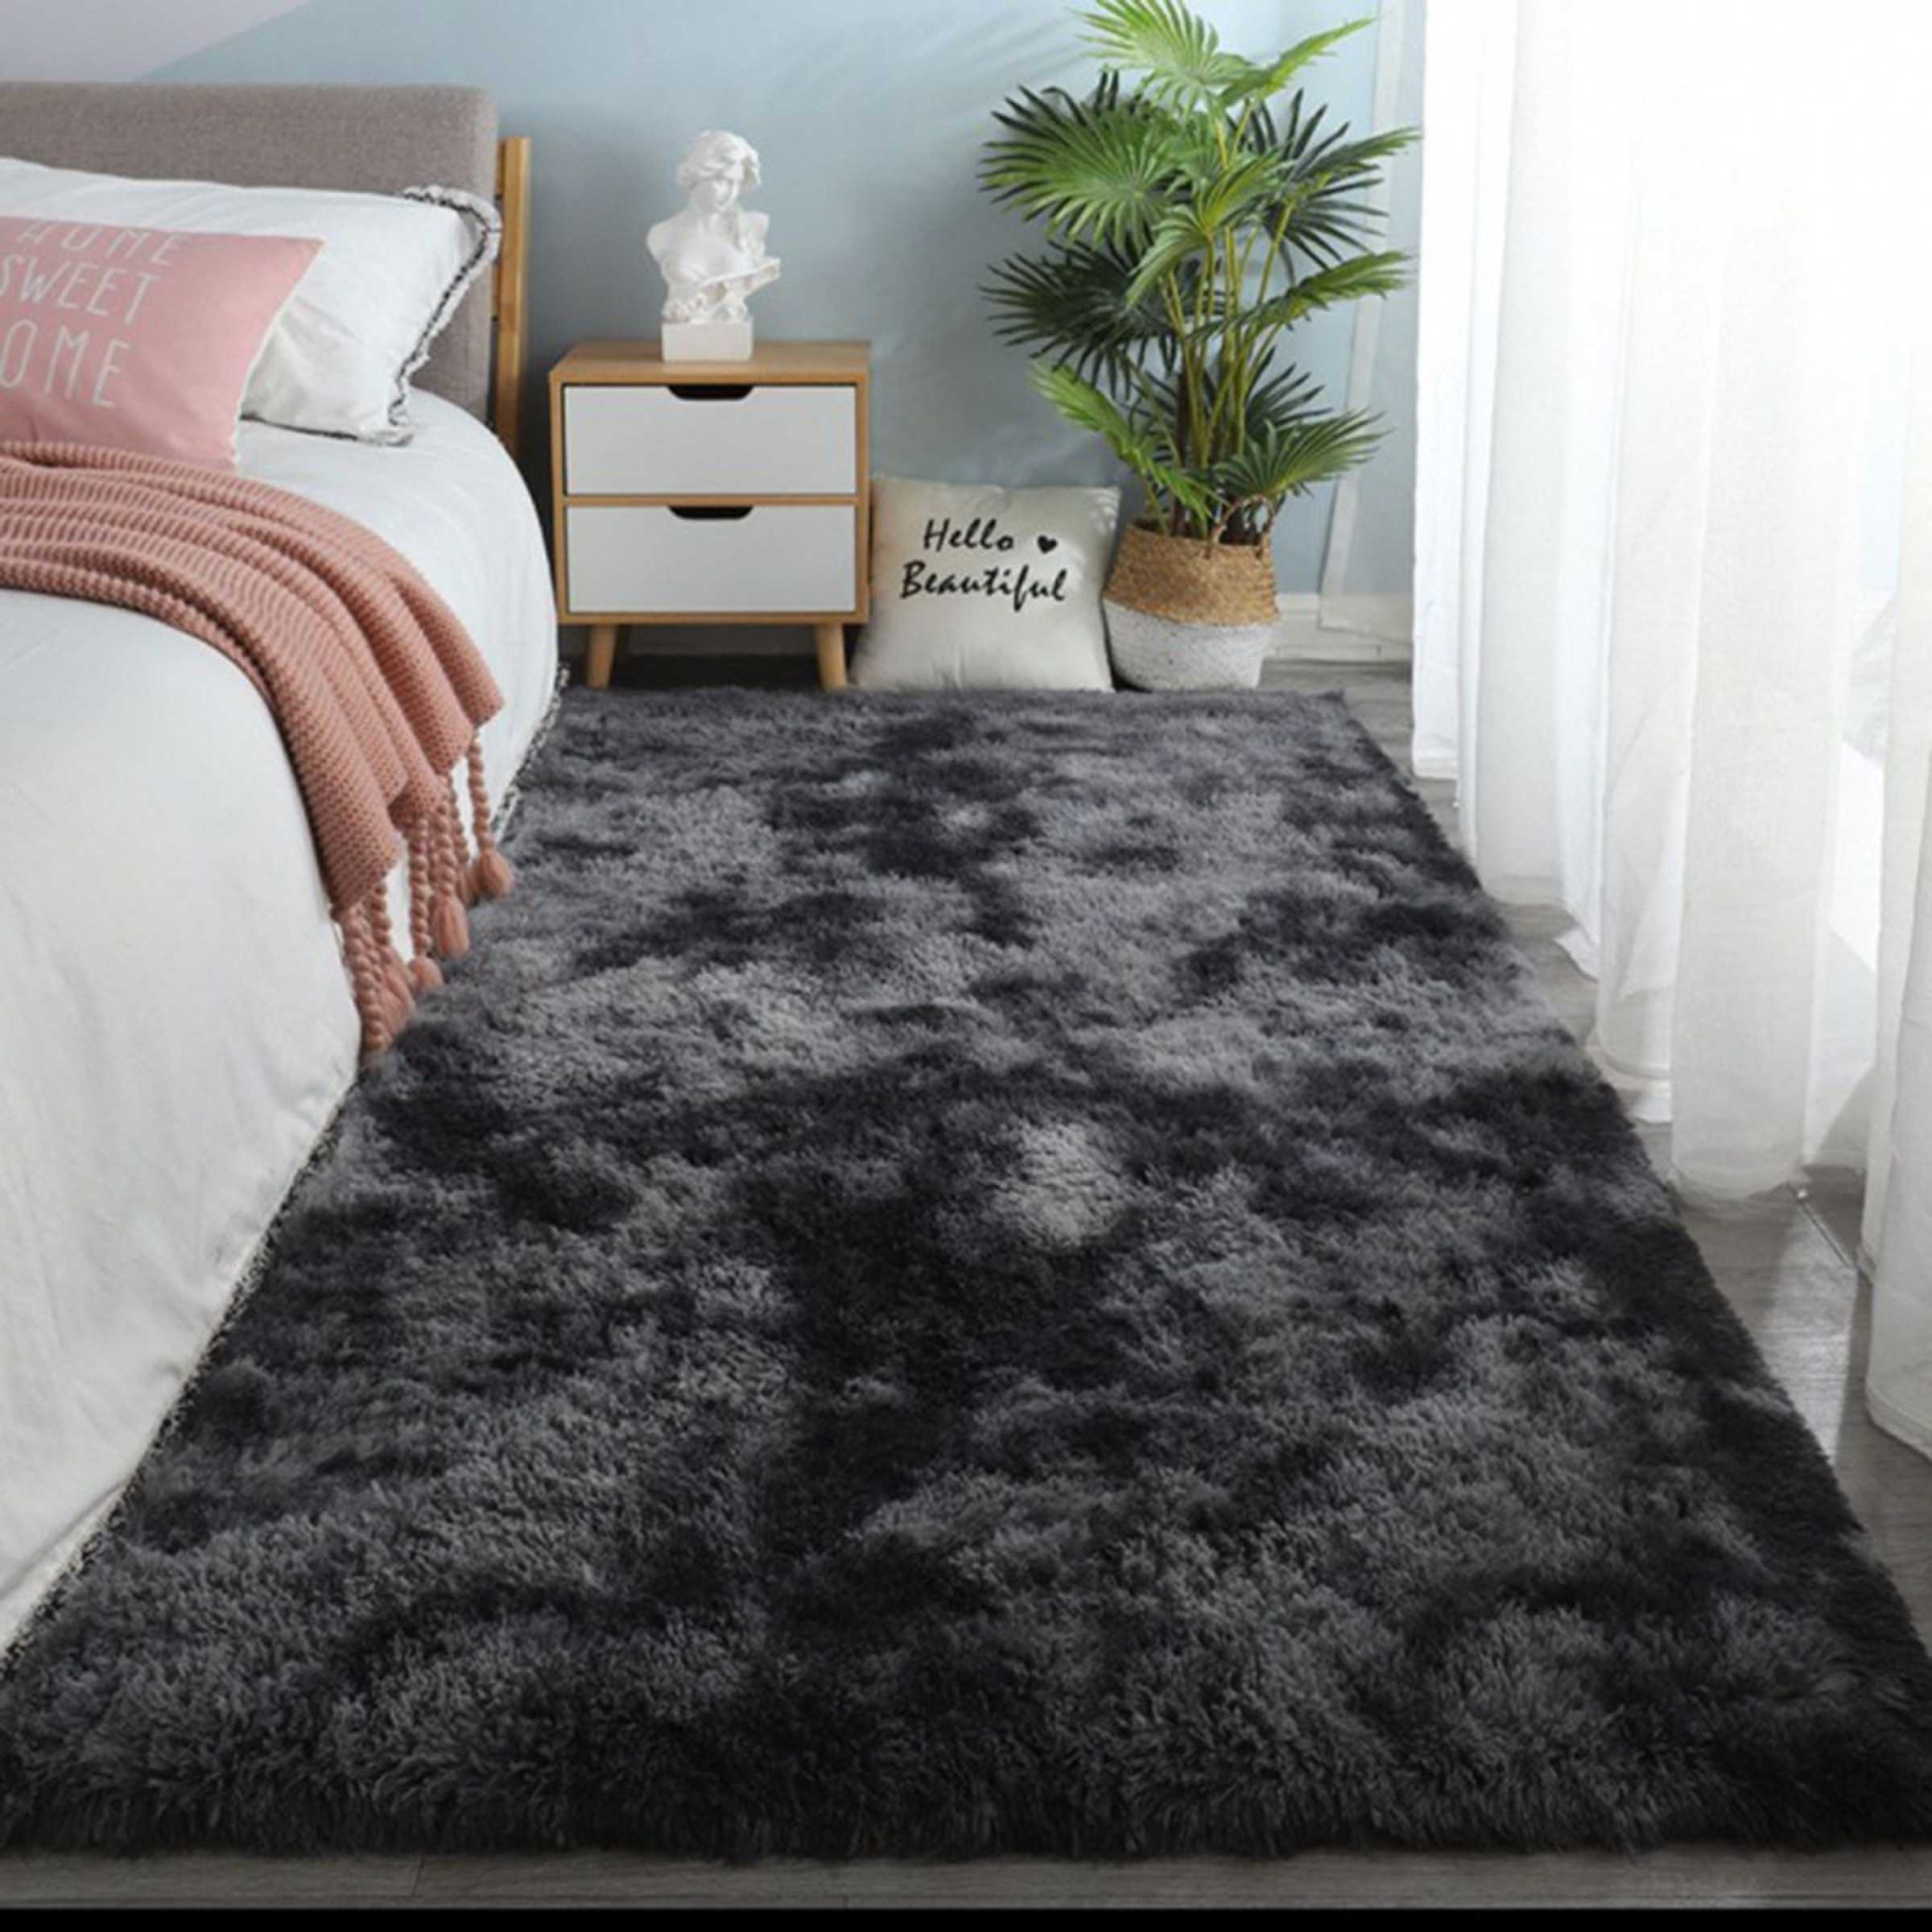 3 Color Large Size Fluffy Soft Carpet Anti-skid Floor Rug Bedroom